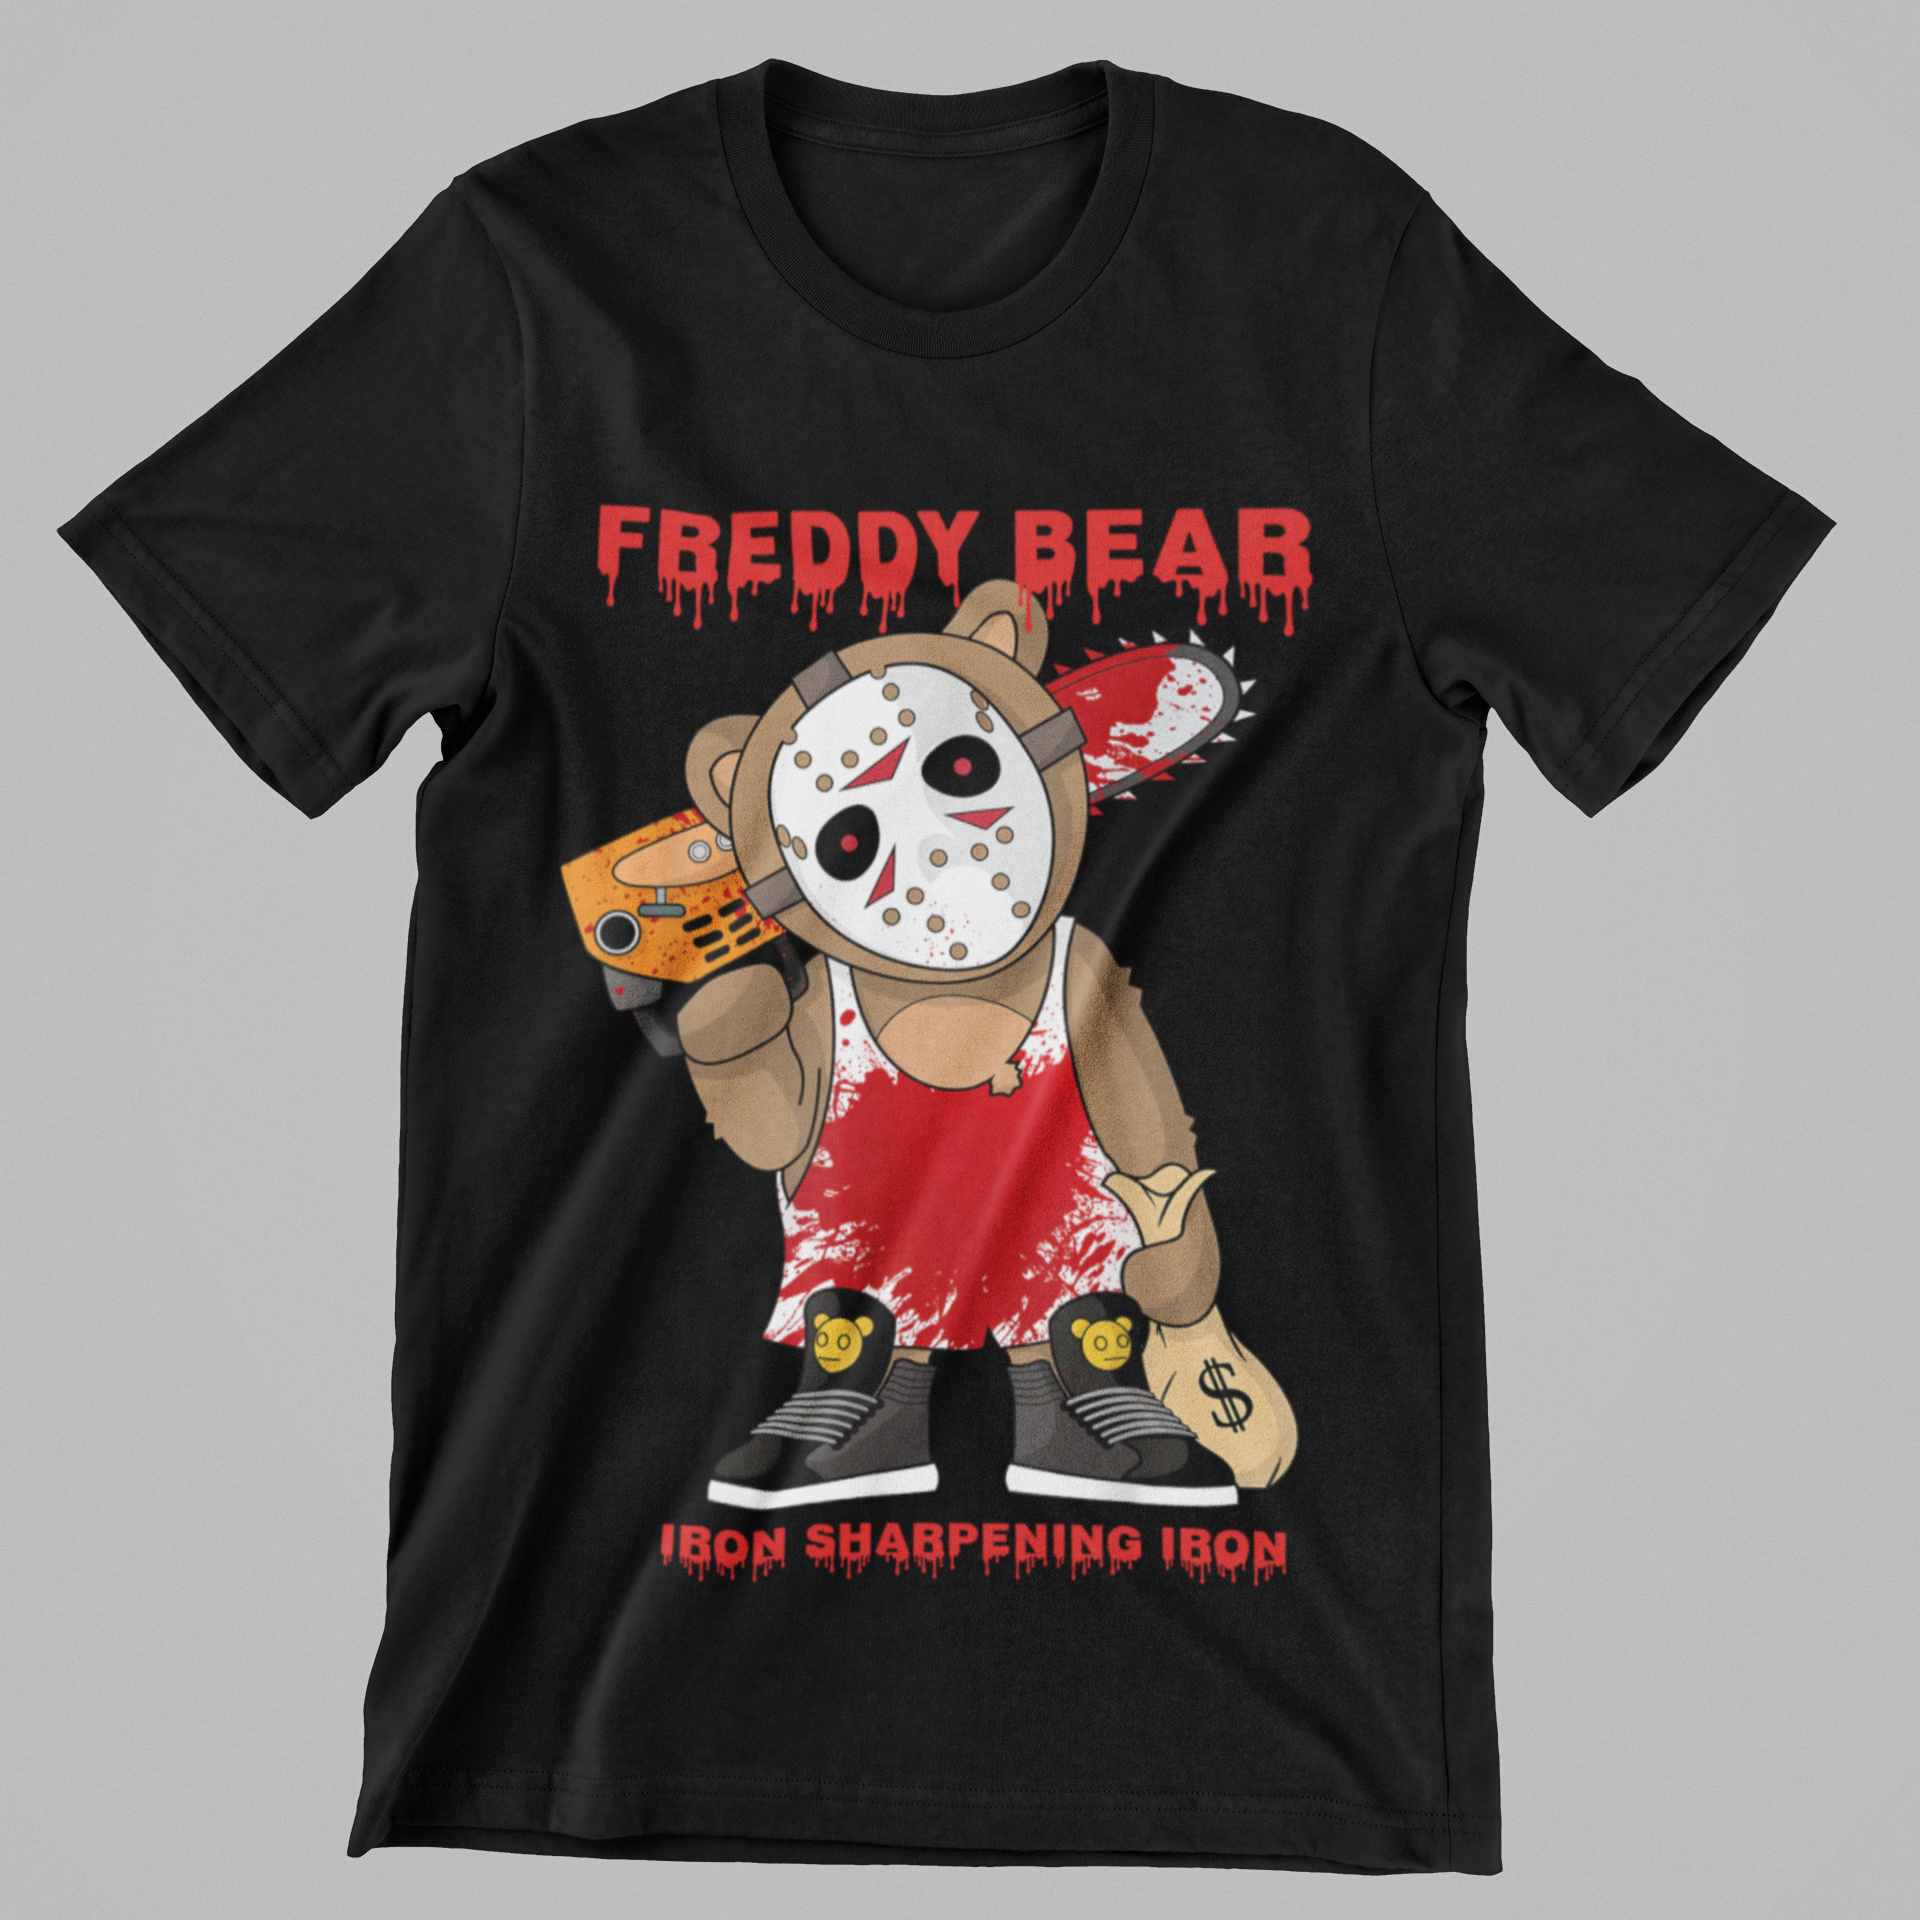 'FREDDY BEAR' T-shirt